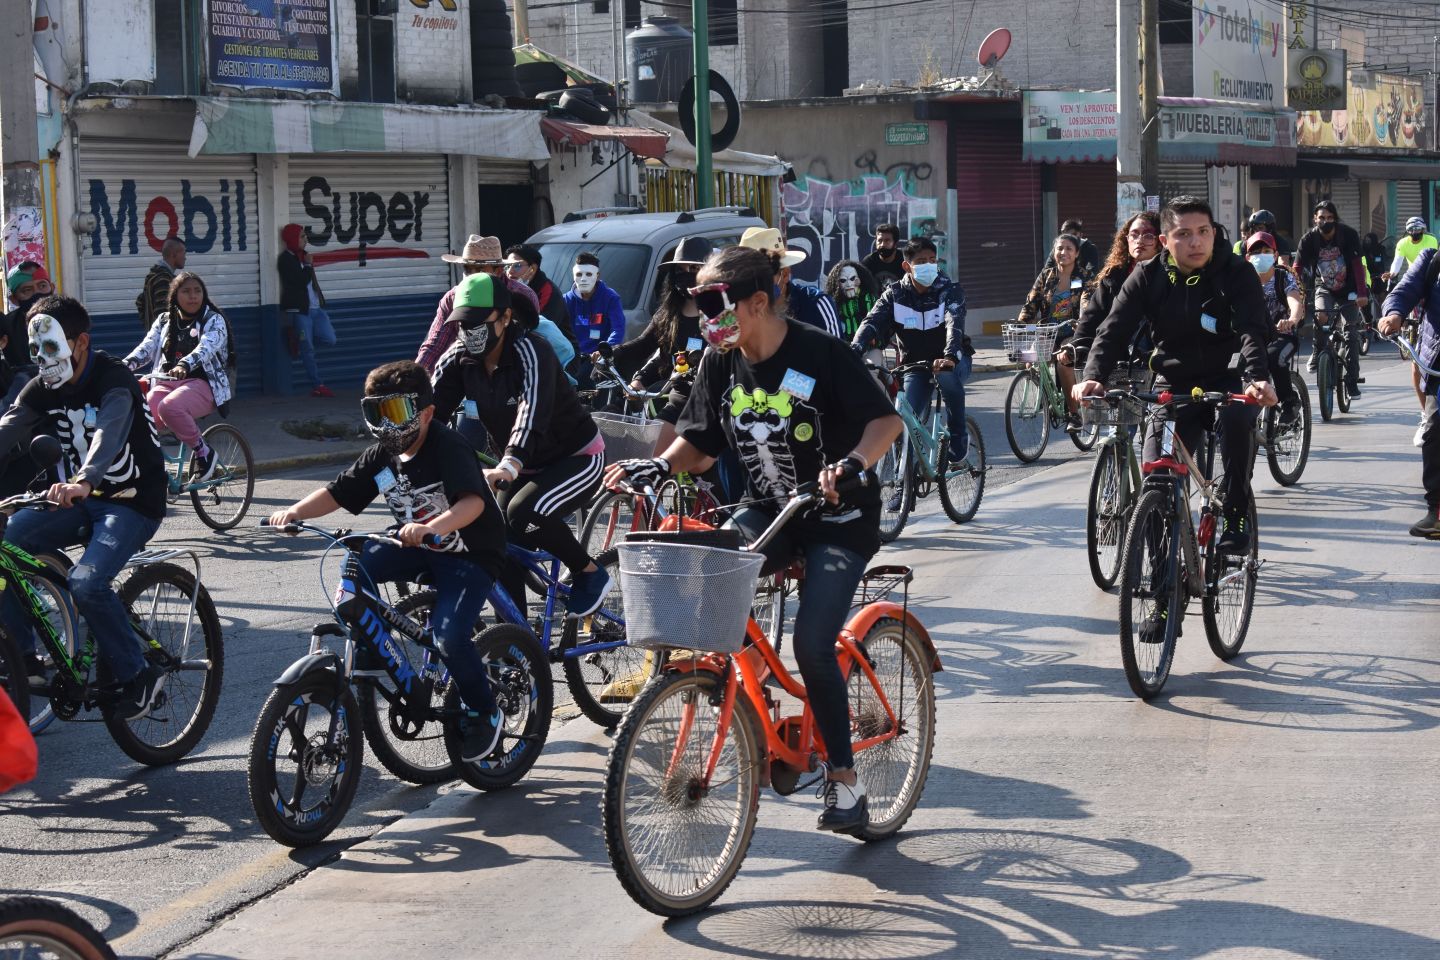 
En Chimalhuacan IMCUFIDECH celebra Día de Muertos con paseo ciclista
